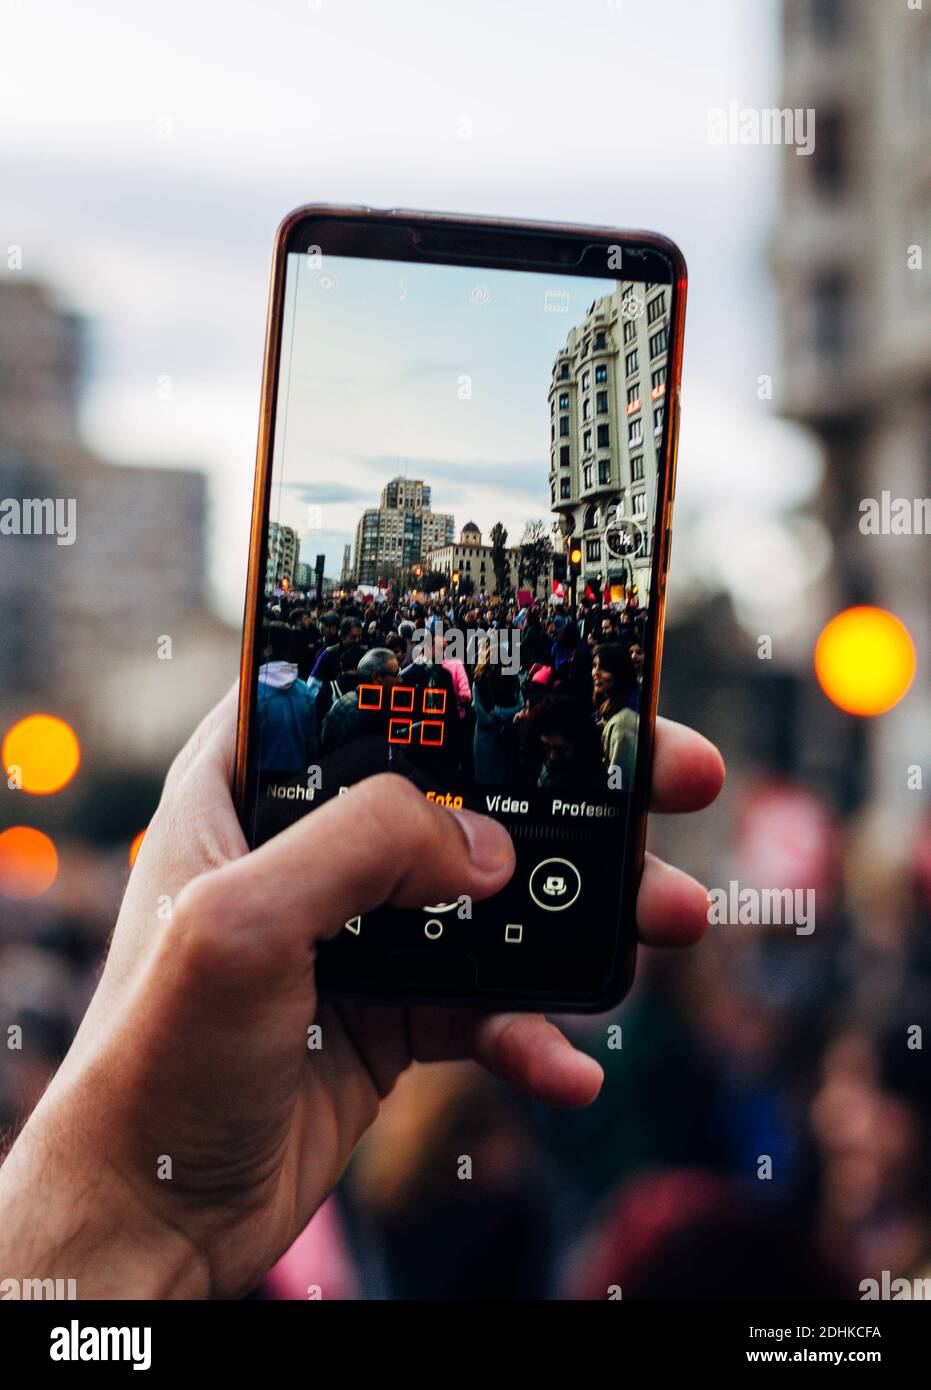 VALENCIA, SPAGNA - Mar 11, 2020: POV Fotografia di un cellulare fare una foto a persone ed edifici in dimostrazione femminista. Foto Stock